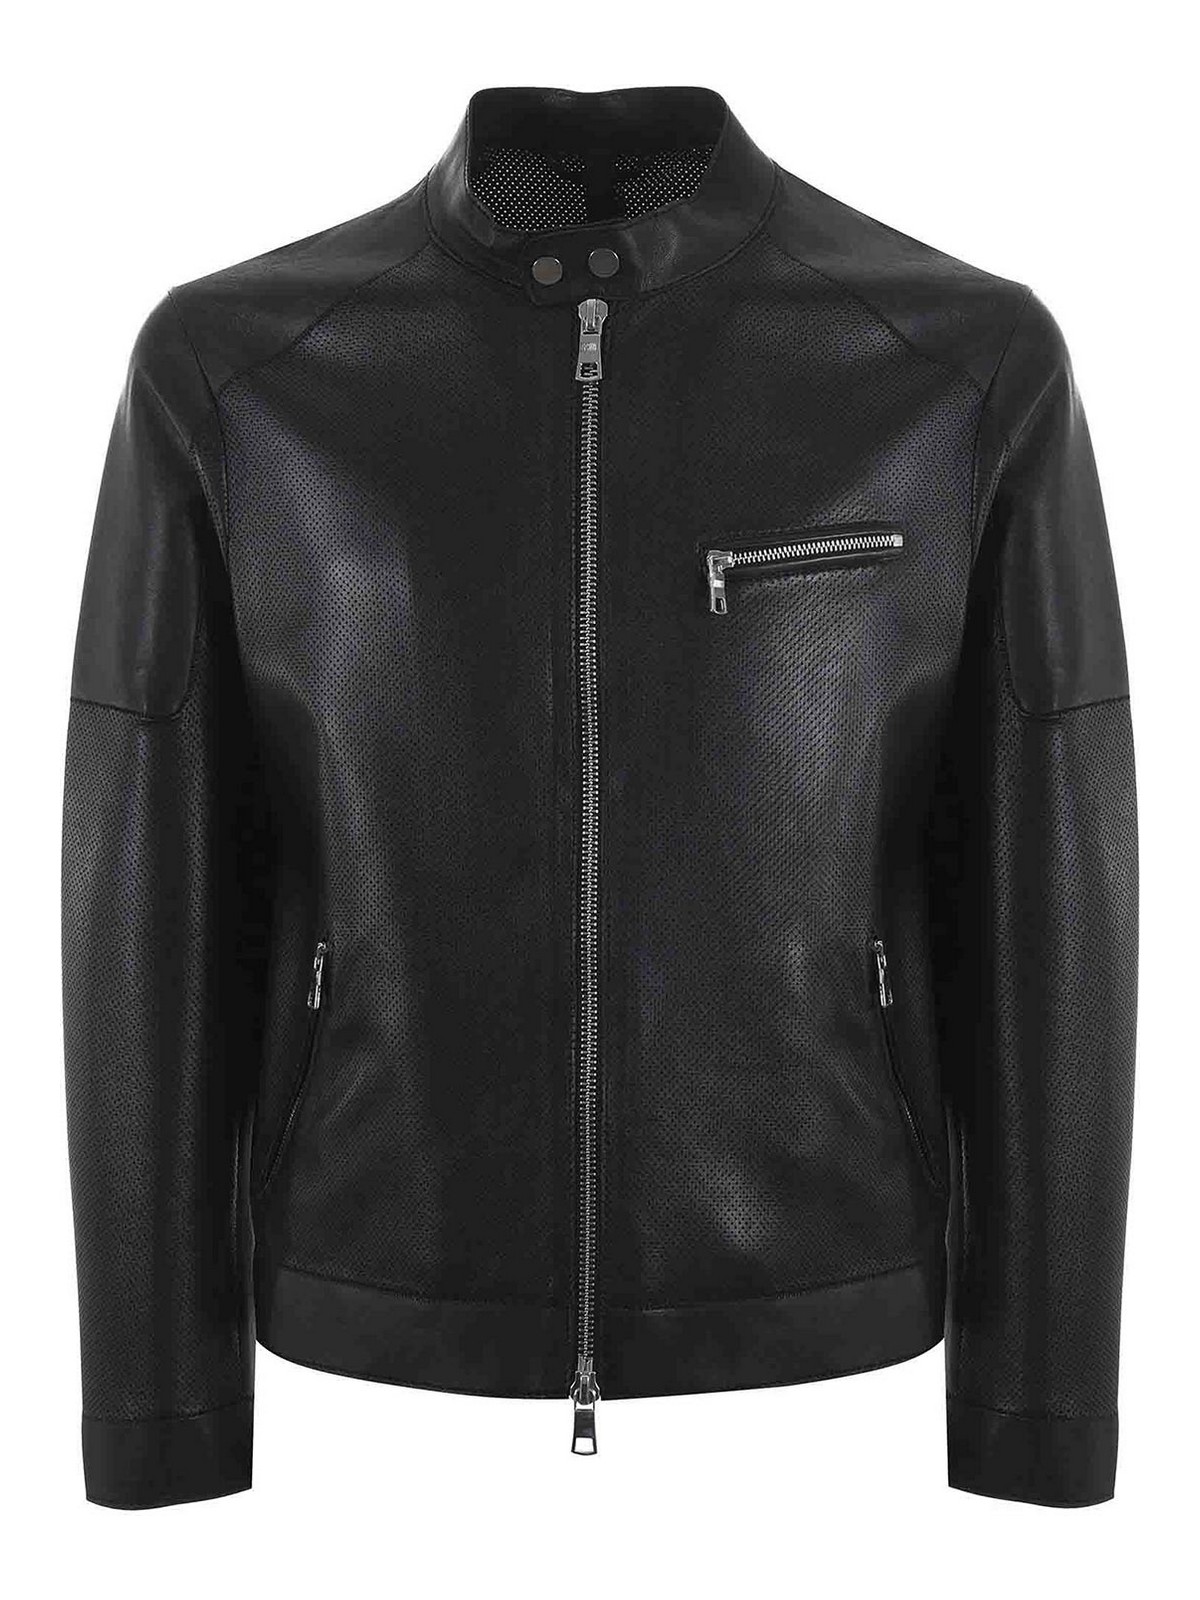 Shop The Jack Leathers Biker Jacket In Black